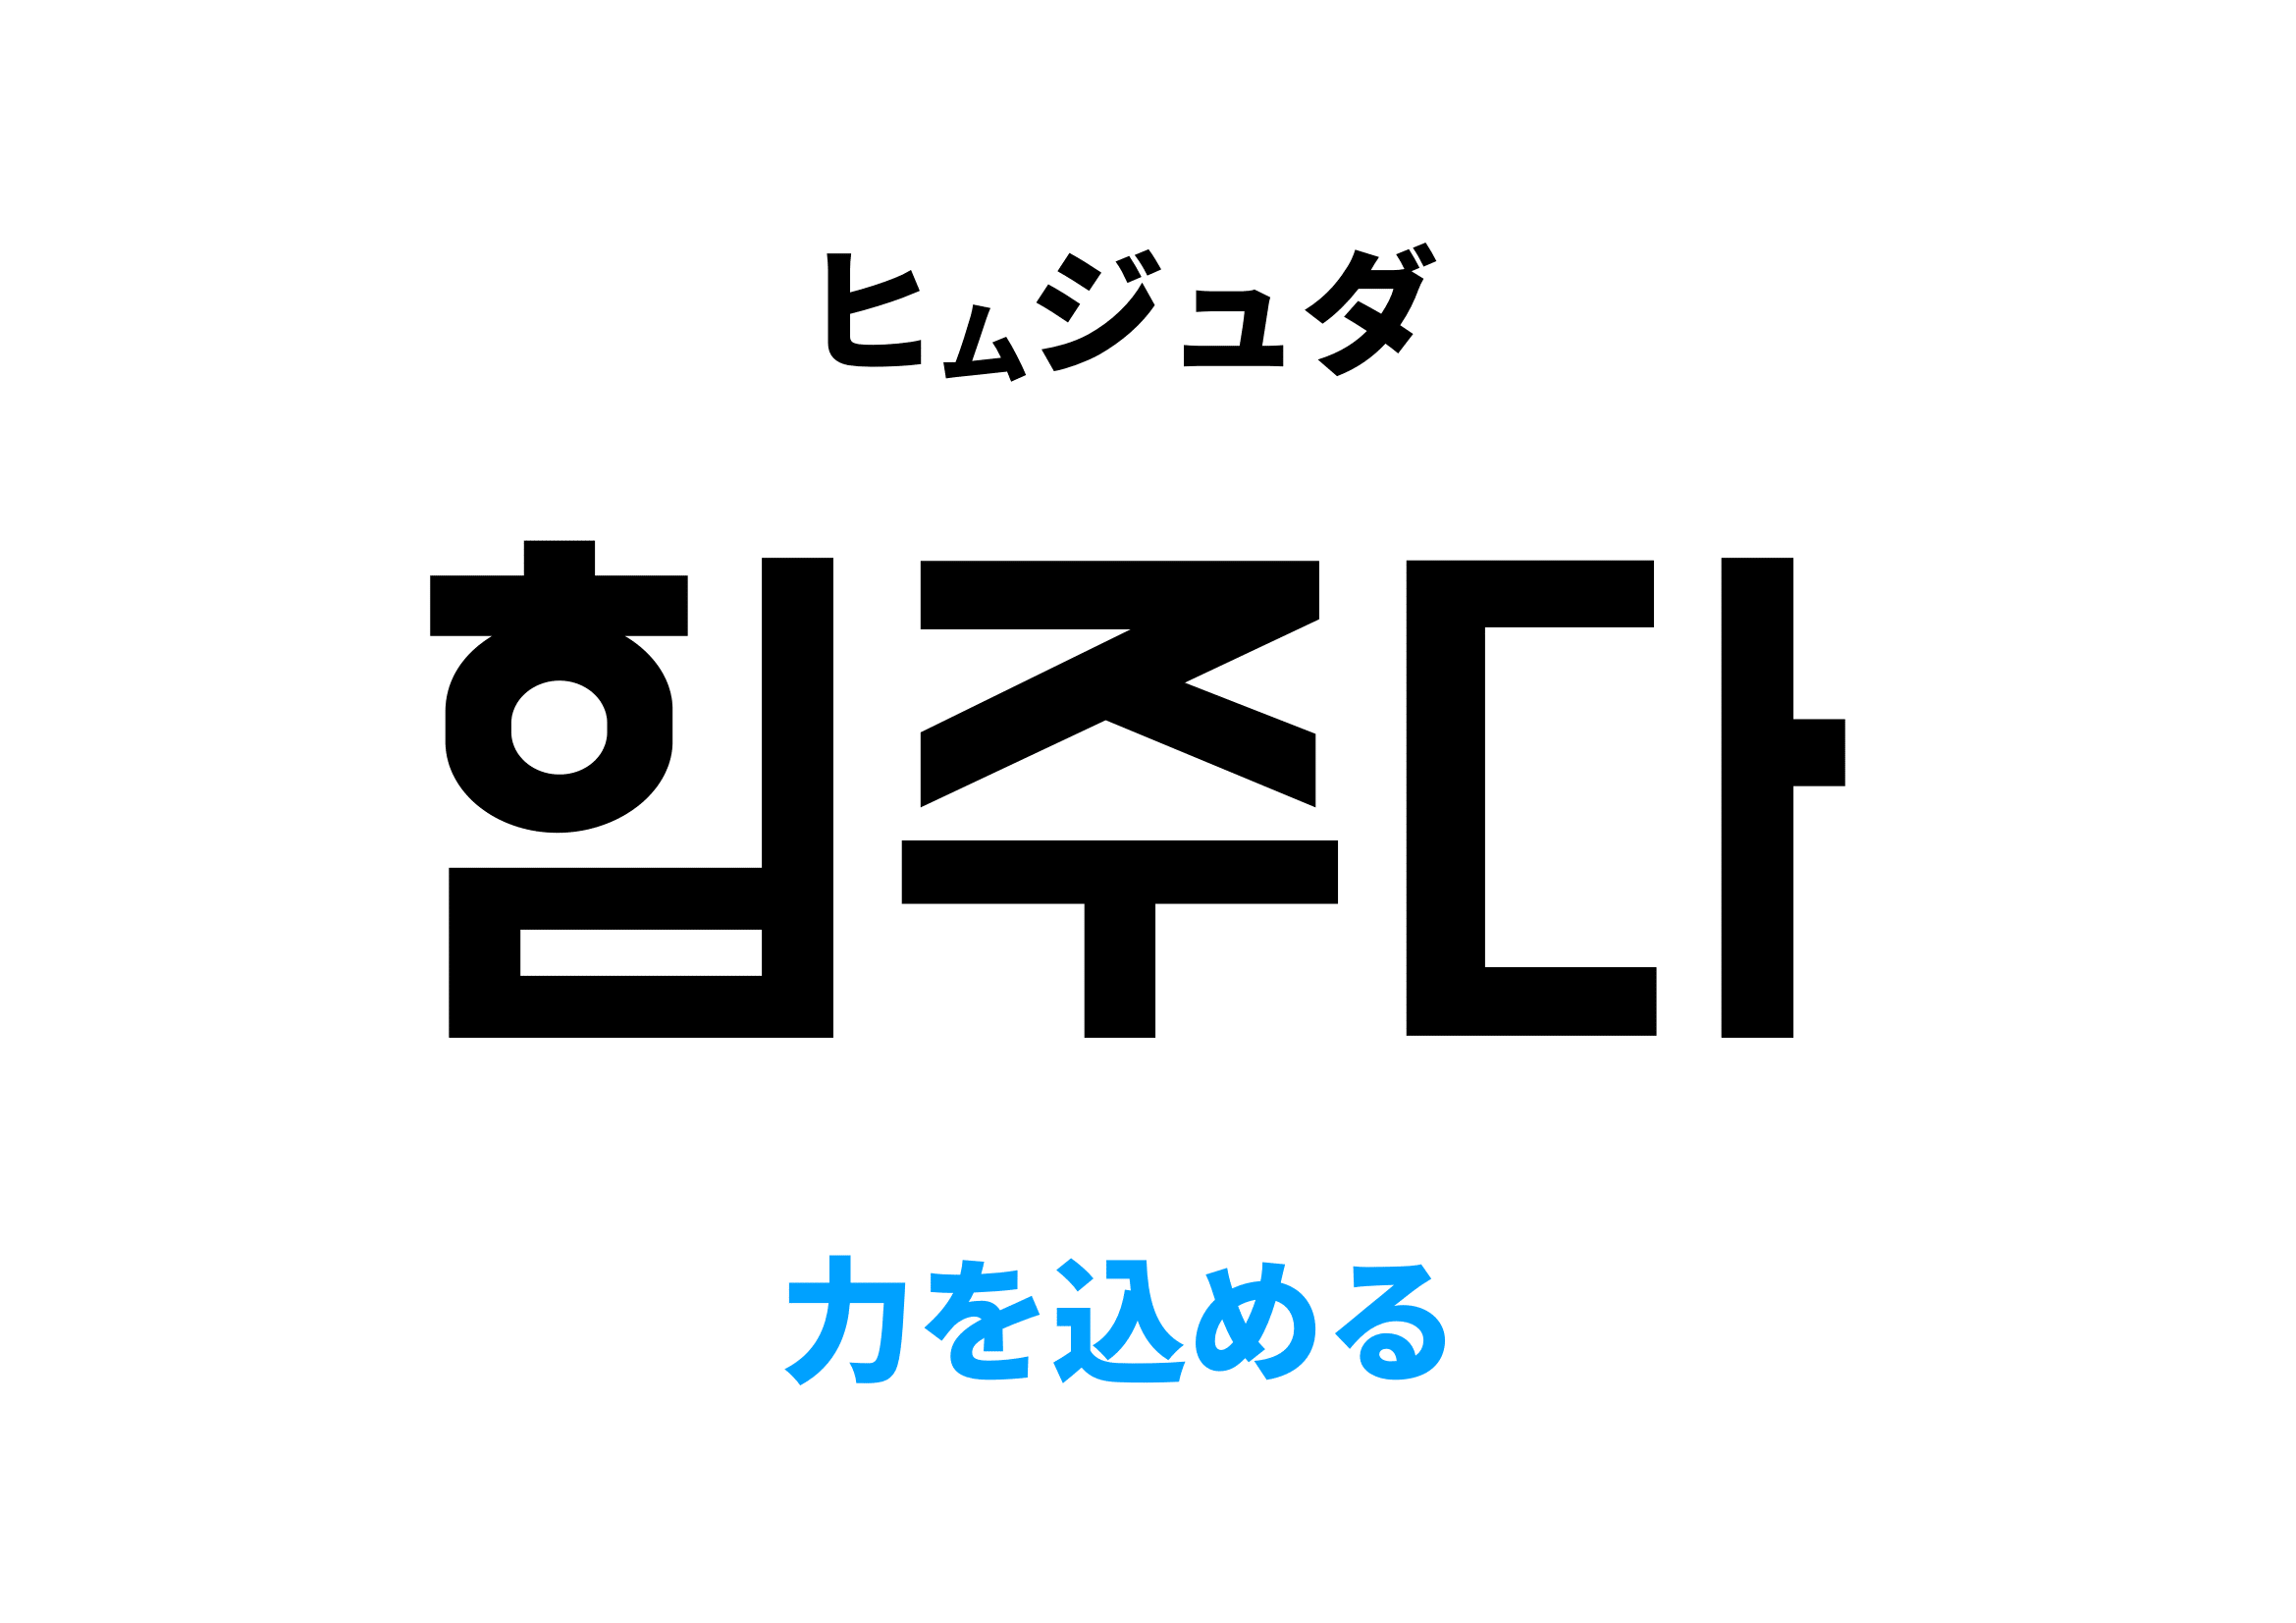 韓国語で力を込める,힘주다の意味